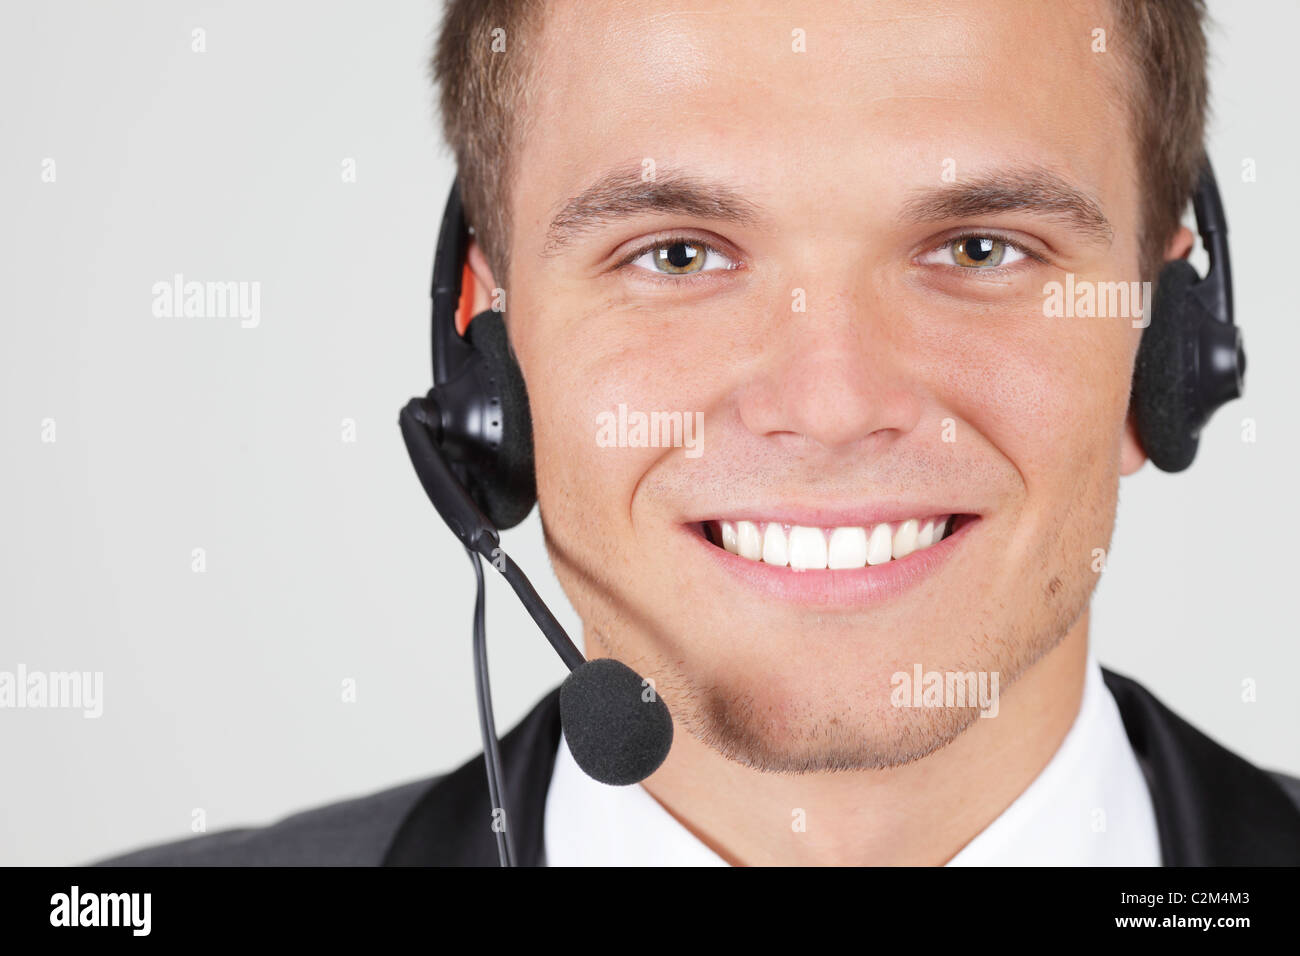 L'opérateur de support client isolé woman smiling Banque D'Images